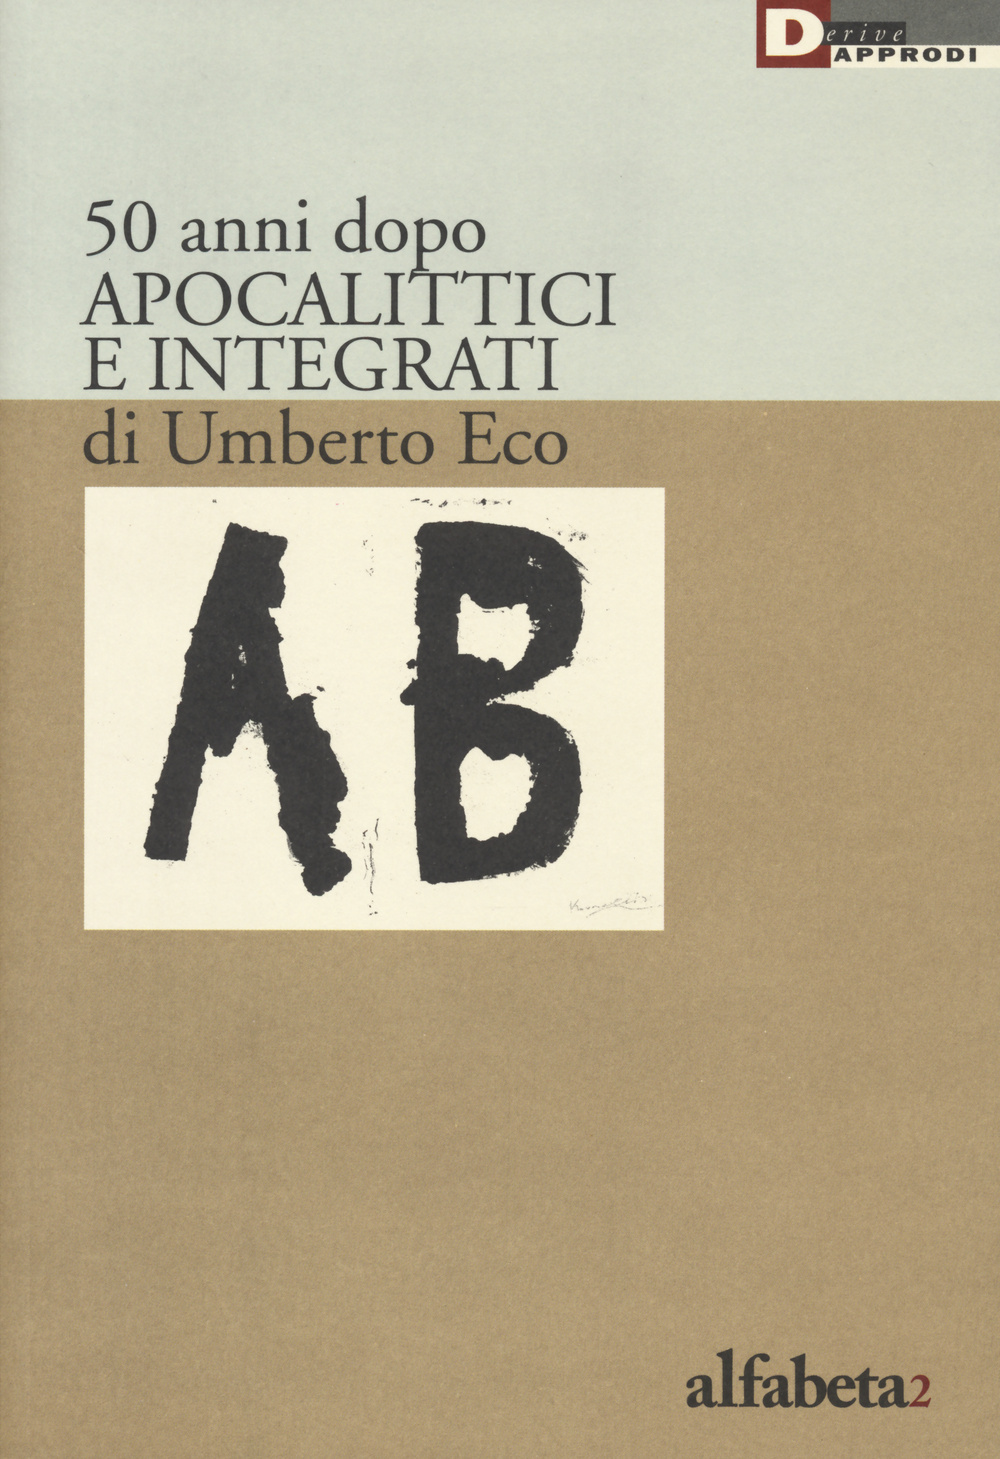 50 anni dopo apocalittici e integrati di Umberto Eco